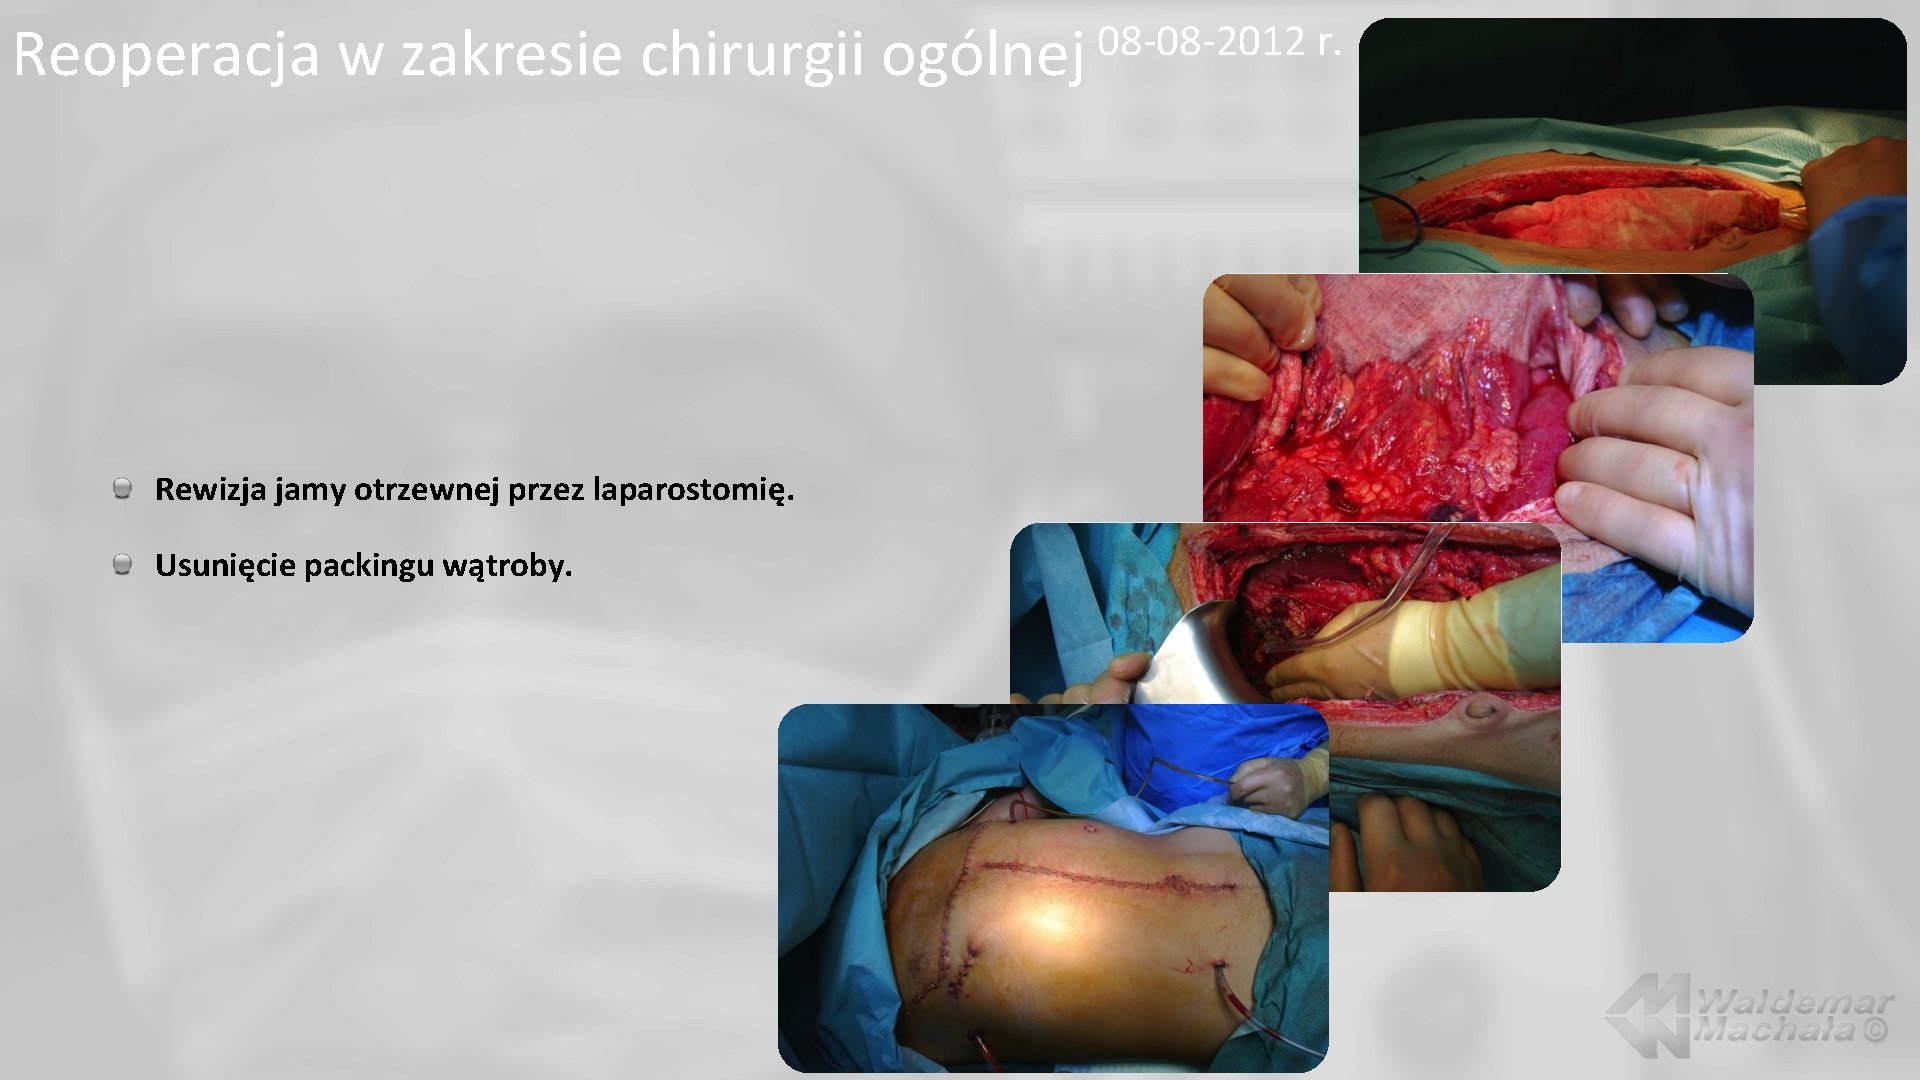 Reoperacja w zakresie chirurgii Rewizja jamy otrzewnej przez laparostomię. Usunięcie packingu wątroby. 08 -08